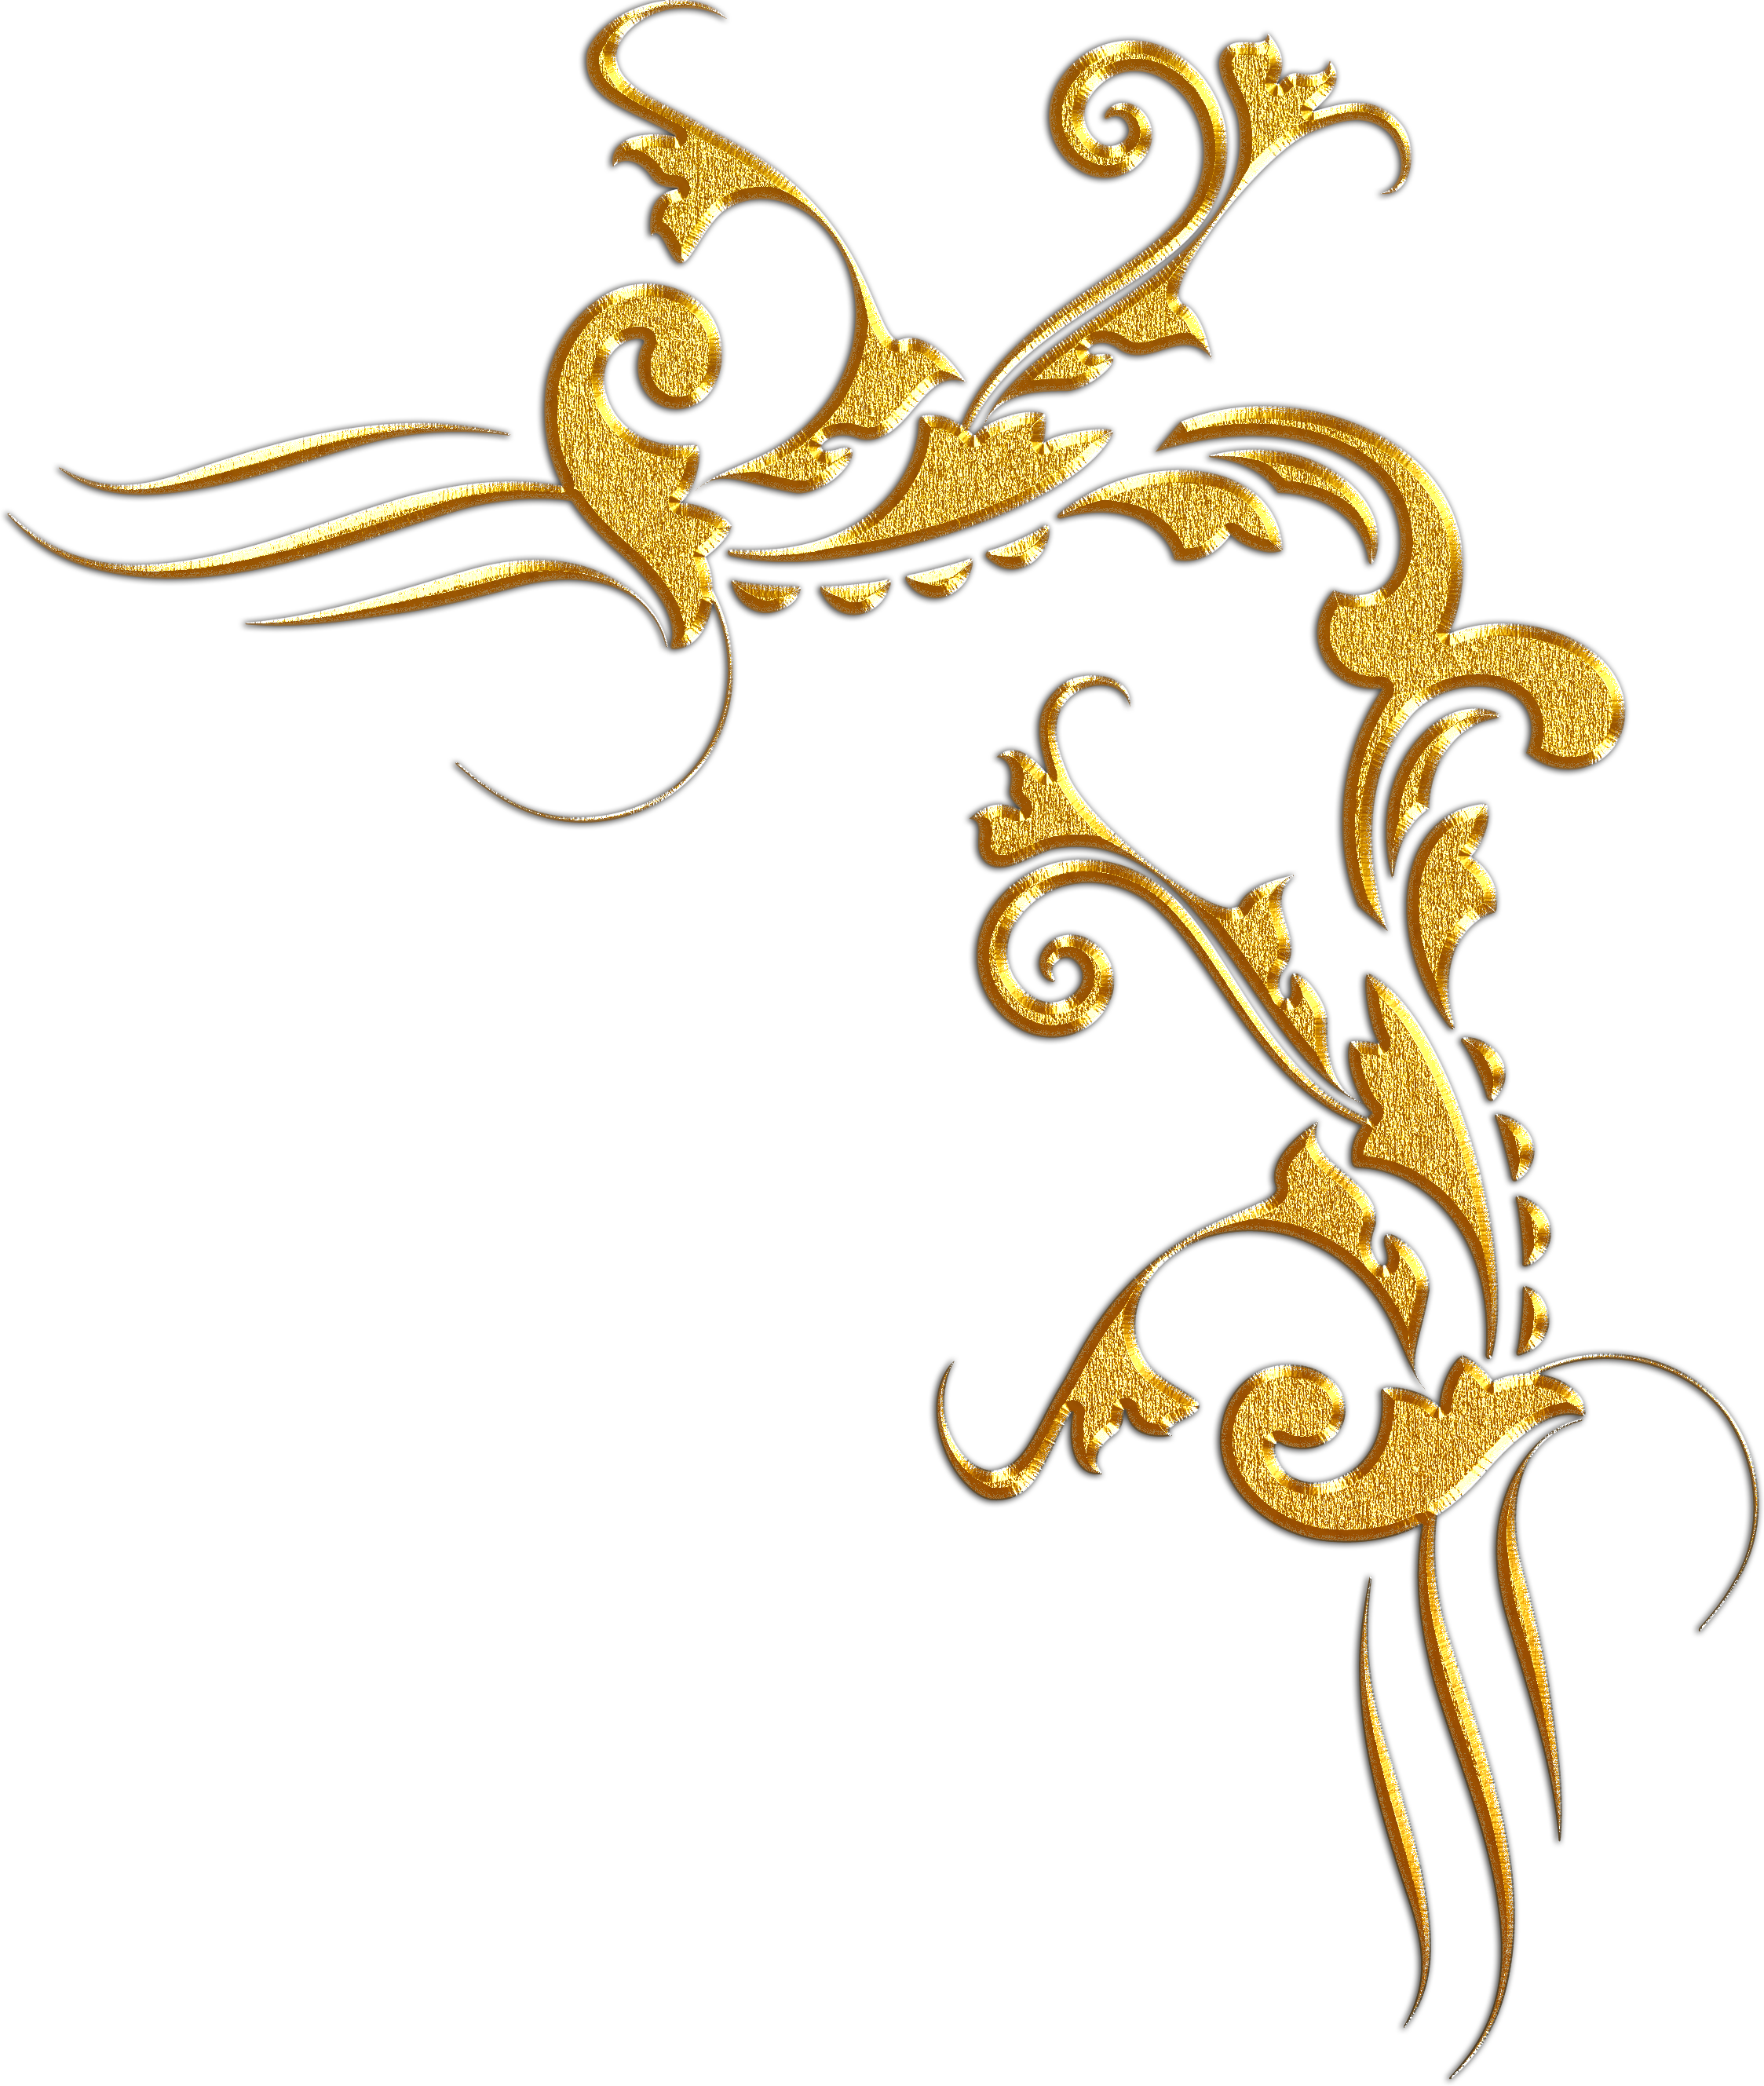 A Gold Floral Design On A Black Background